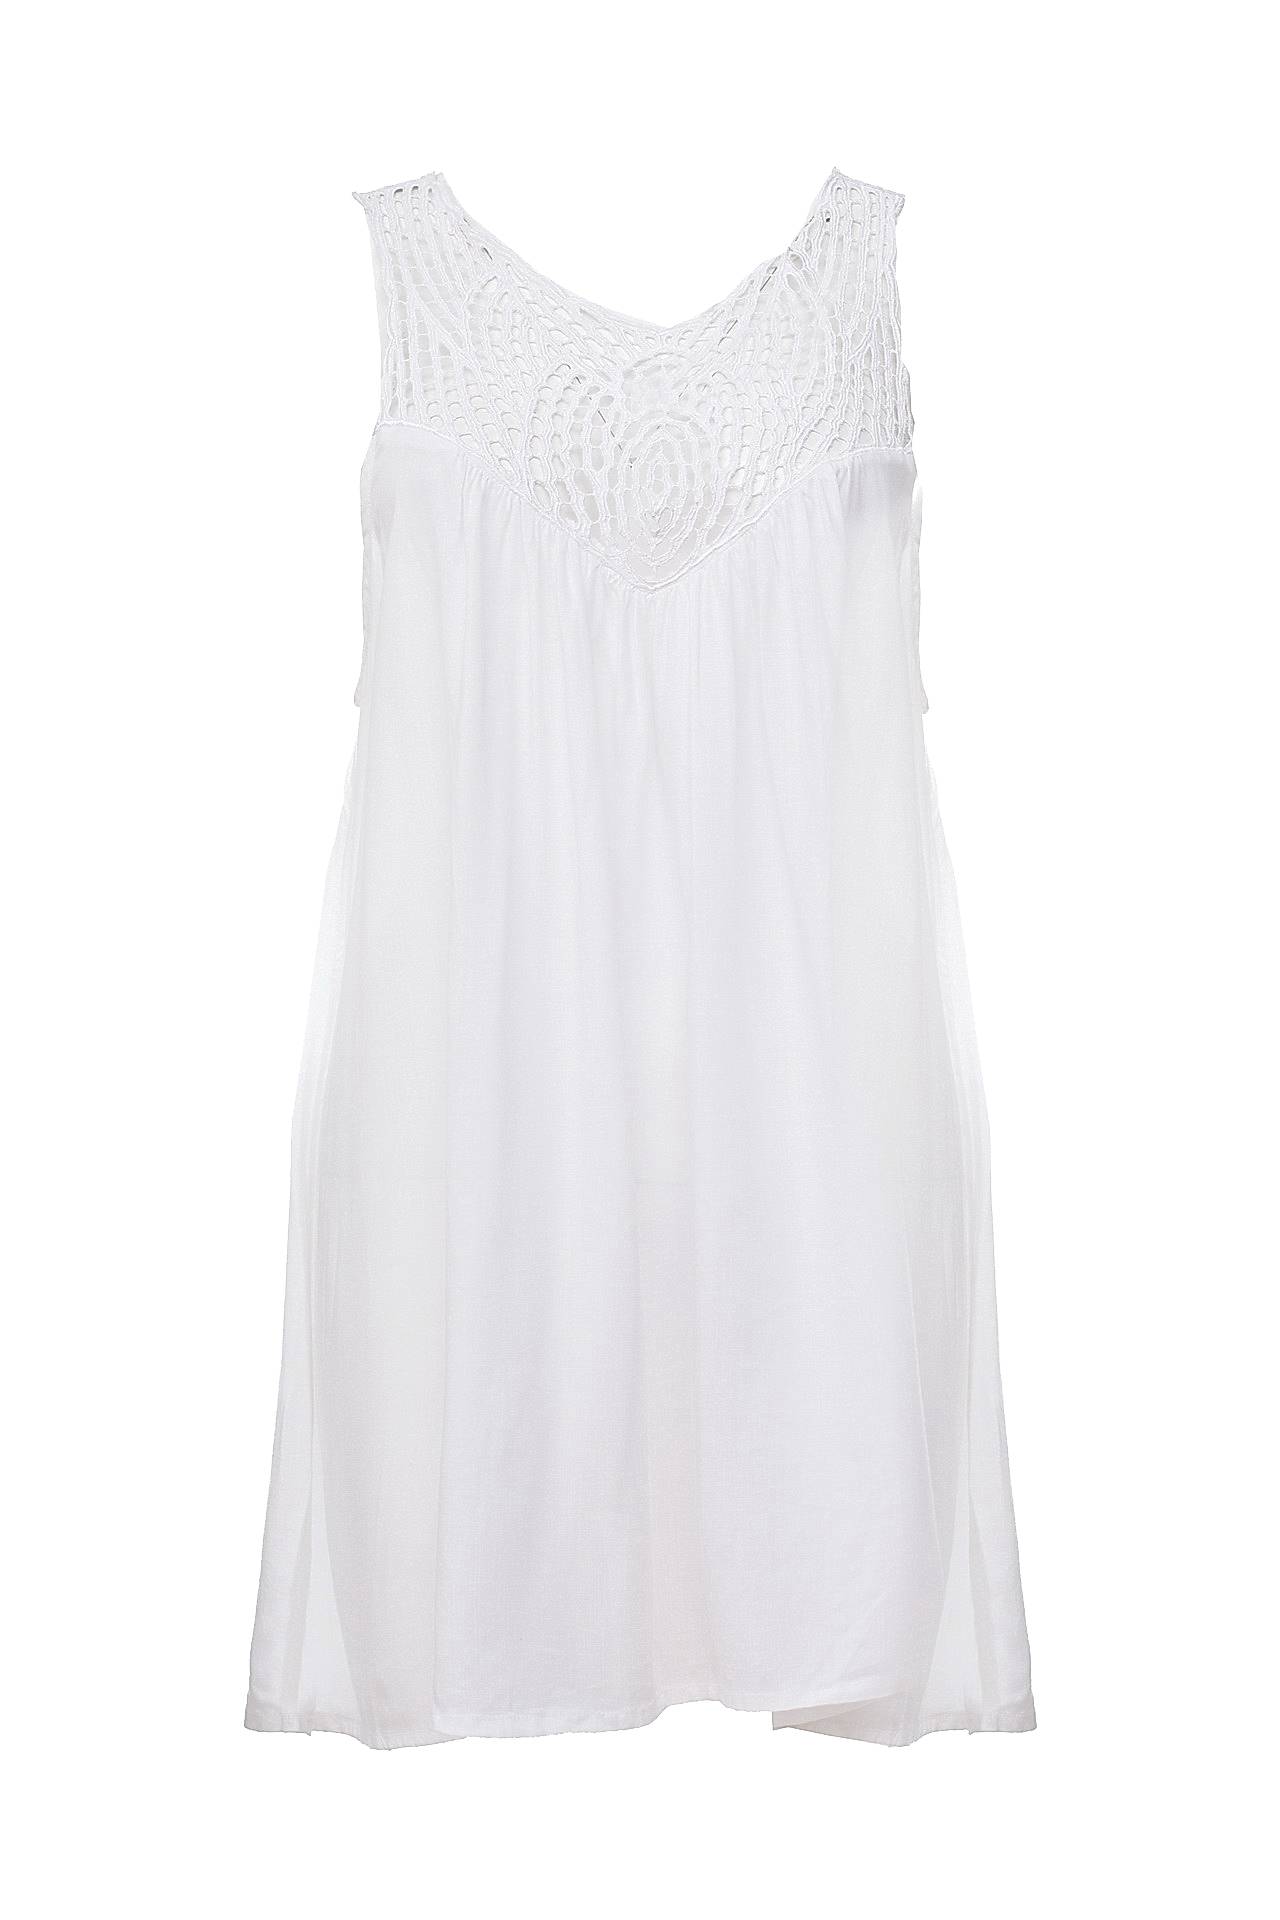 Одежда женская Платье DIVINE DIVA BALI (SARAFANKOR/13.1). Купить за 4950 руб.